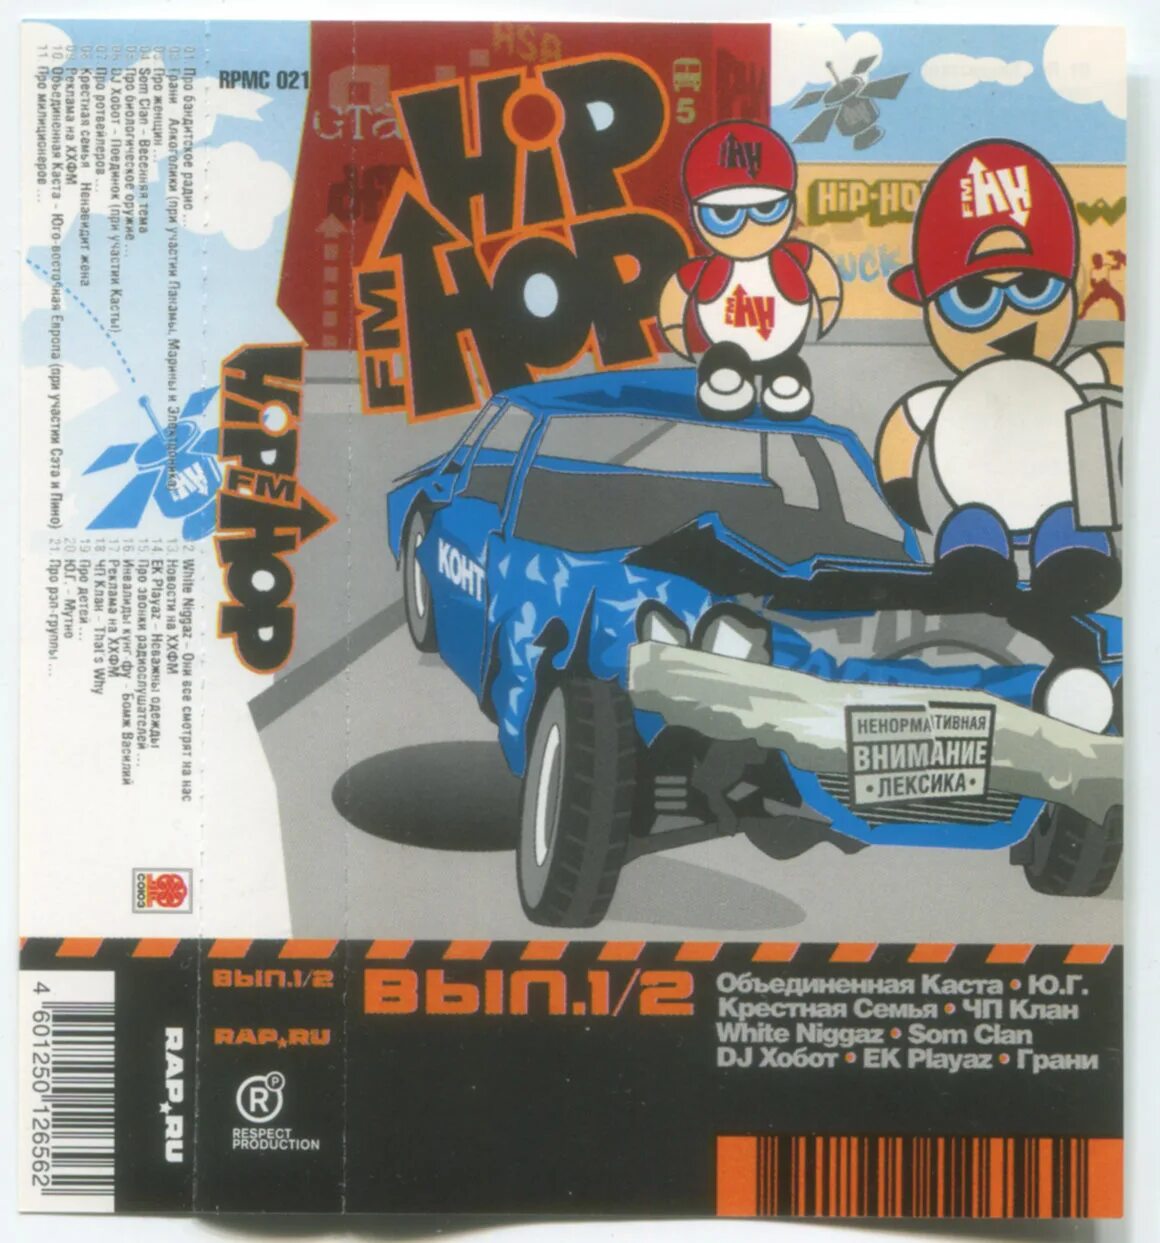 1 выпуск 1 ру. Hip-Hop fm - выпуск 1/2 (2004). Hip-Hop fm выпуск 3/4 2005 respect Production. DJ хобот и Проша плавленый винил.